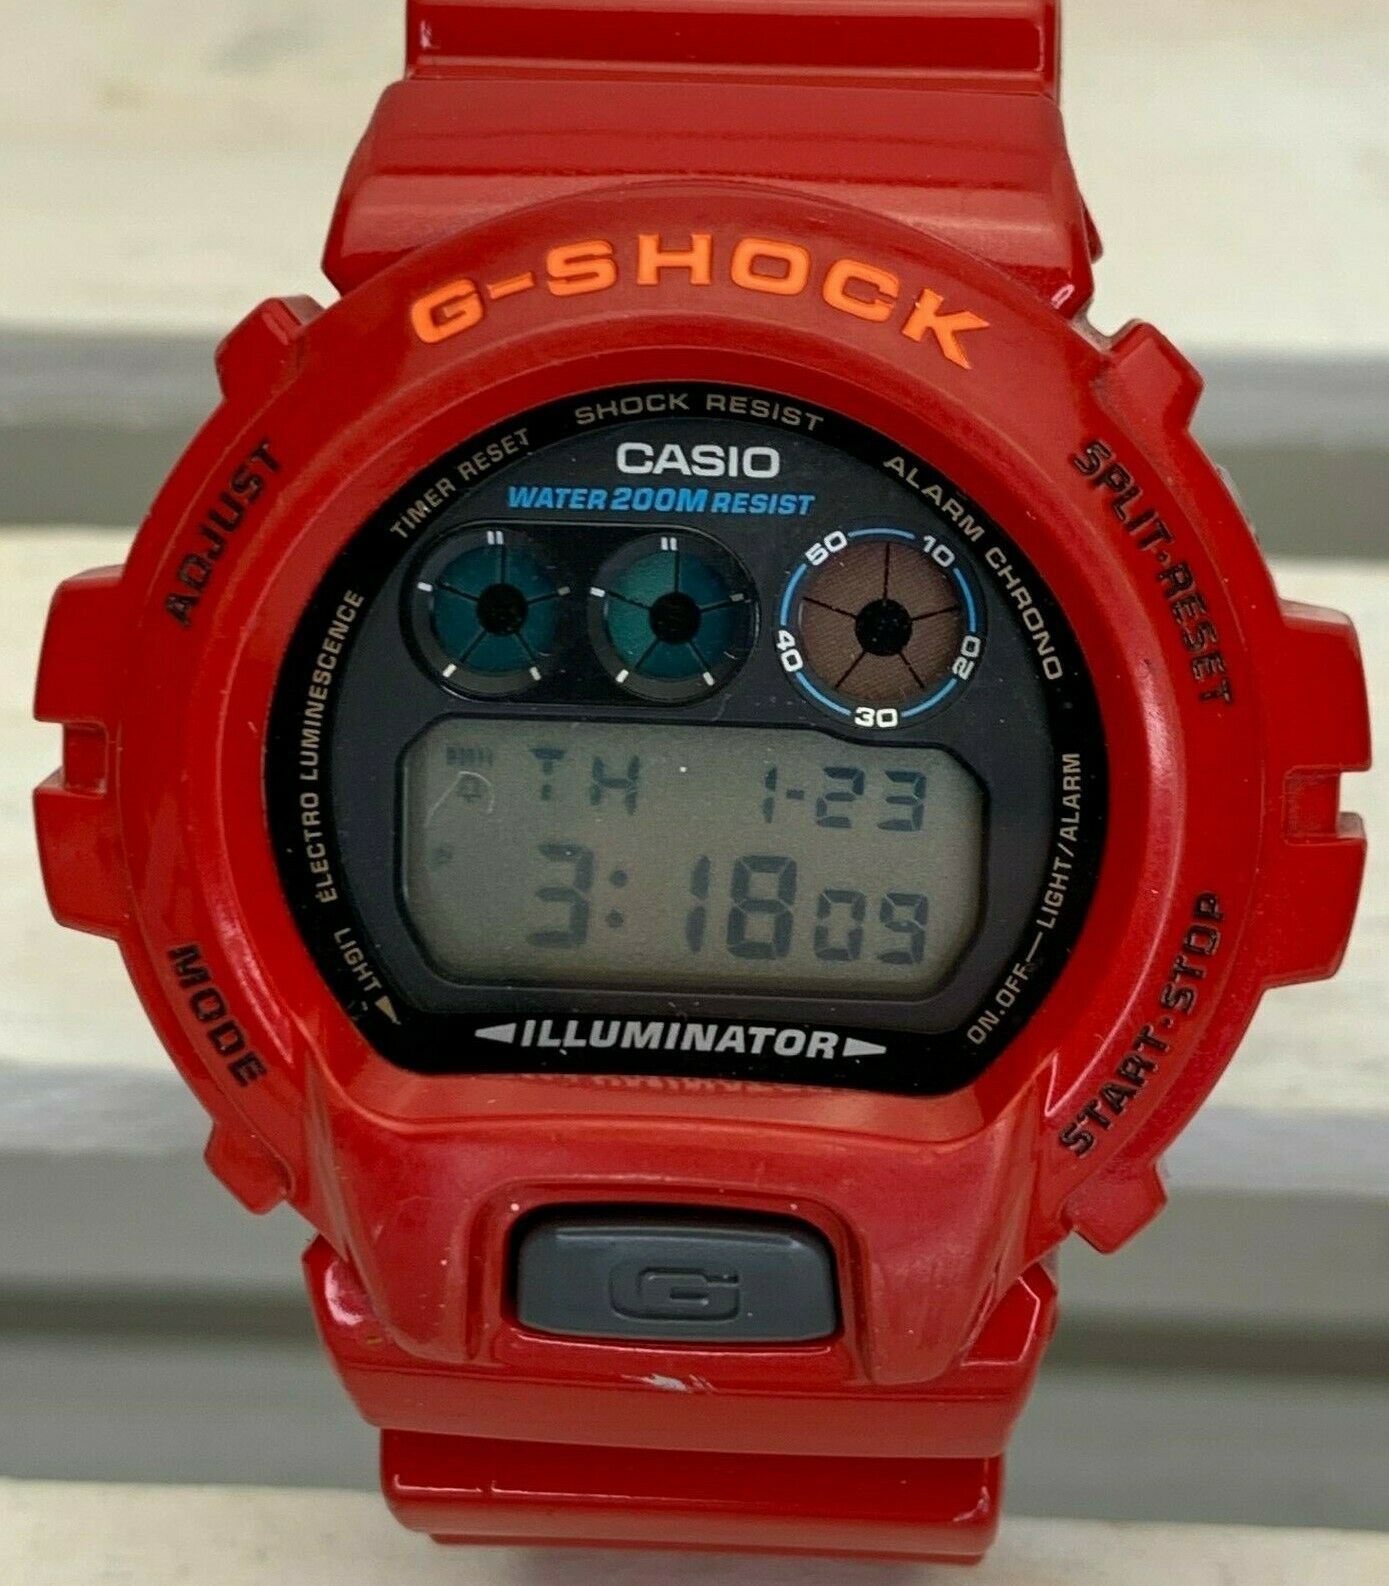 Casio G-Shock (1289) DW-6900 Red And Orange Working